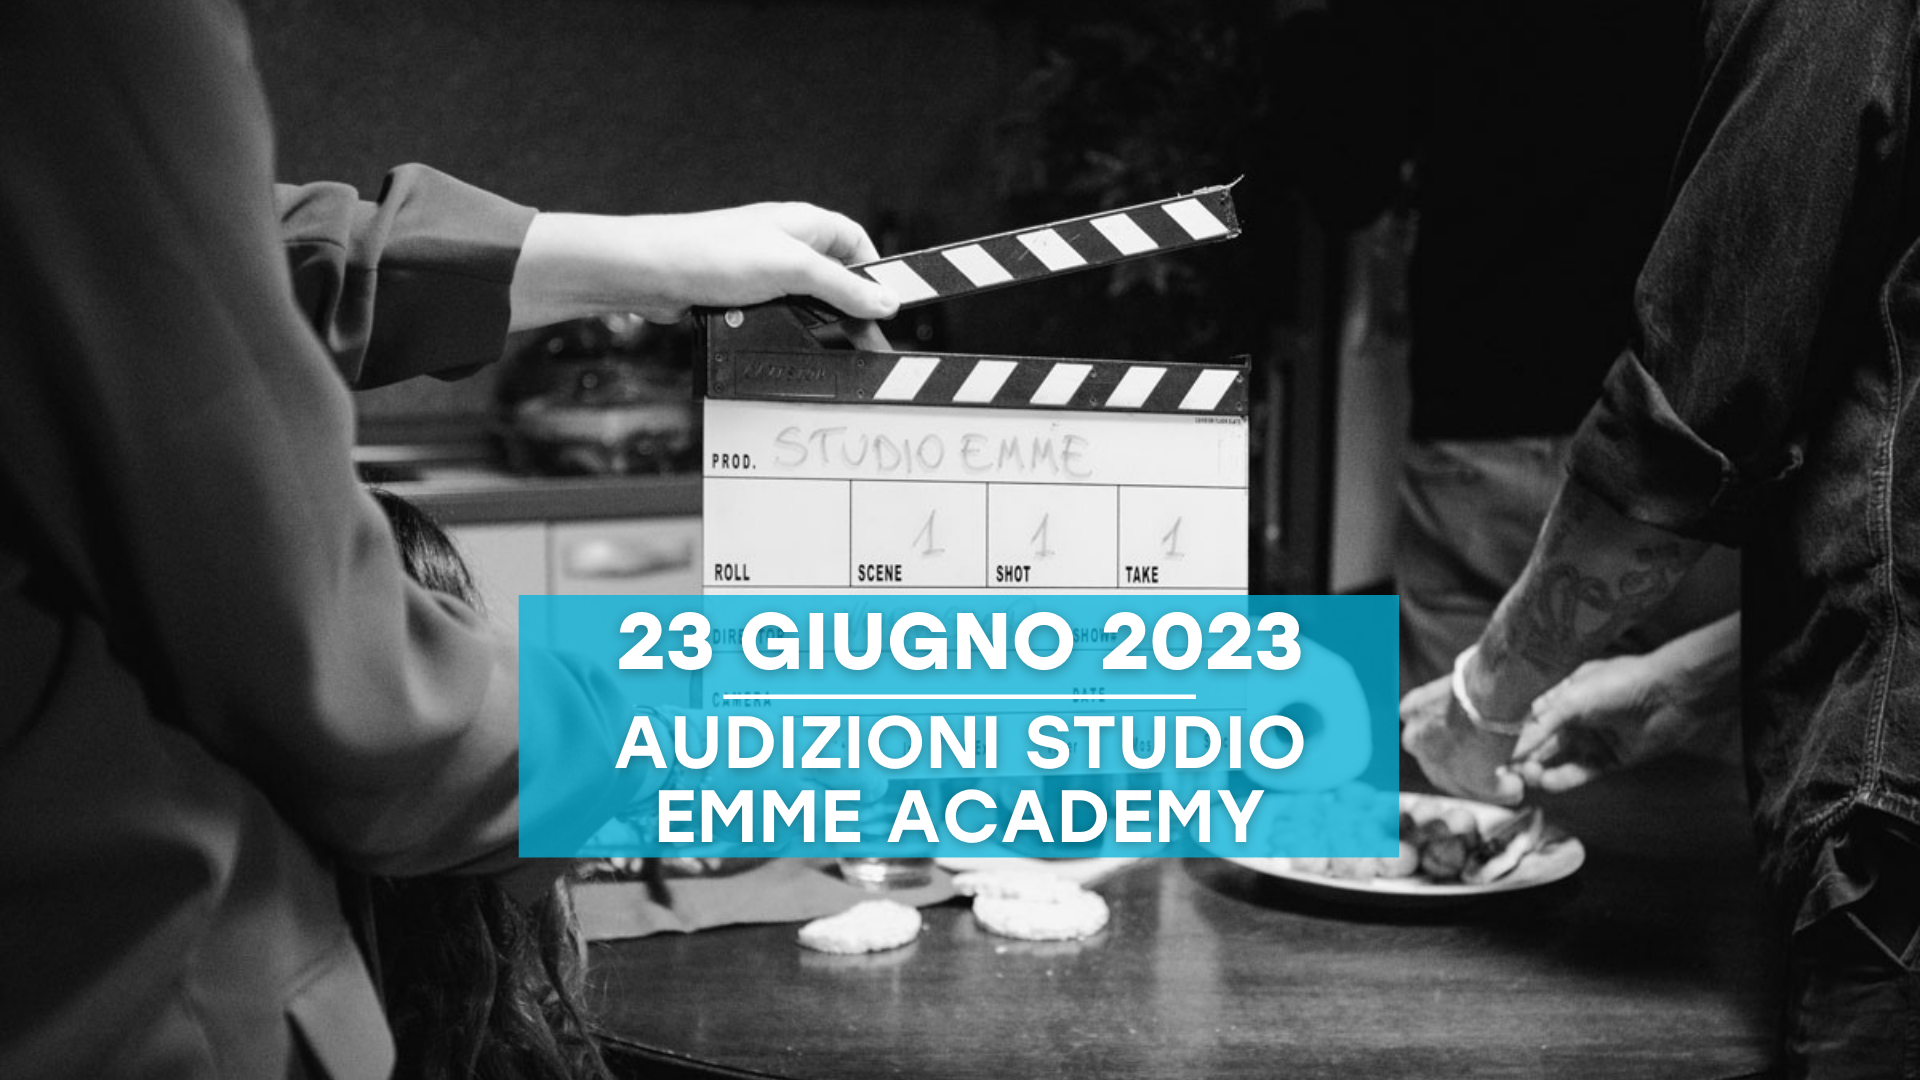 Entra in Studio Emme Academy e dimostra il tuo talento!